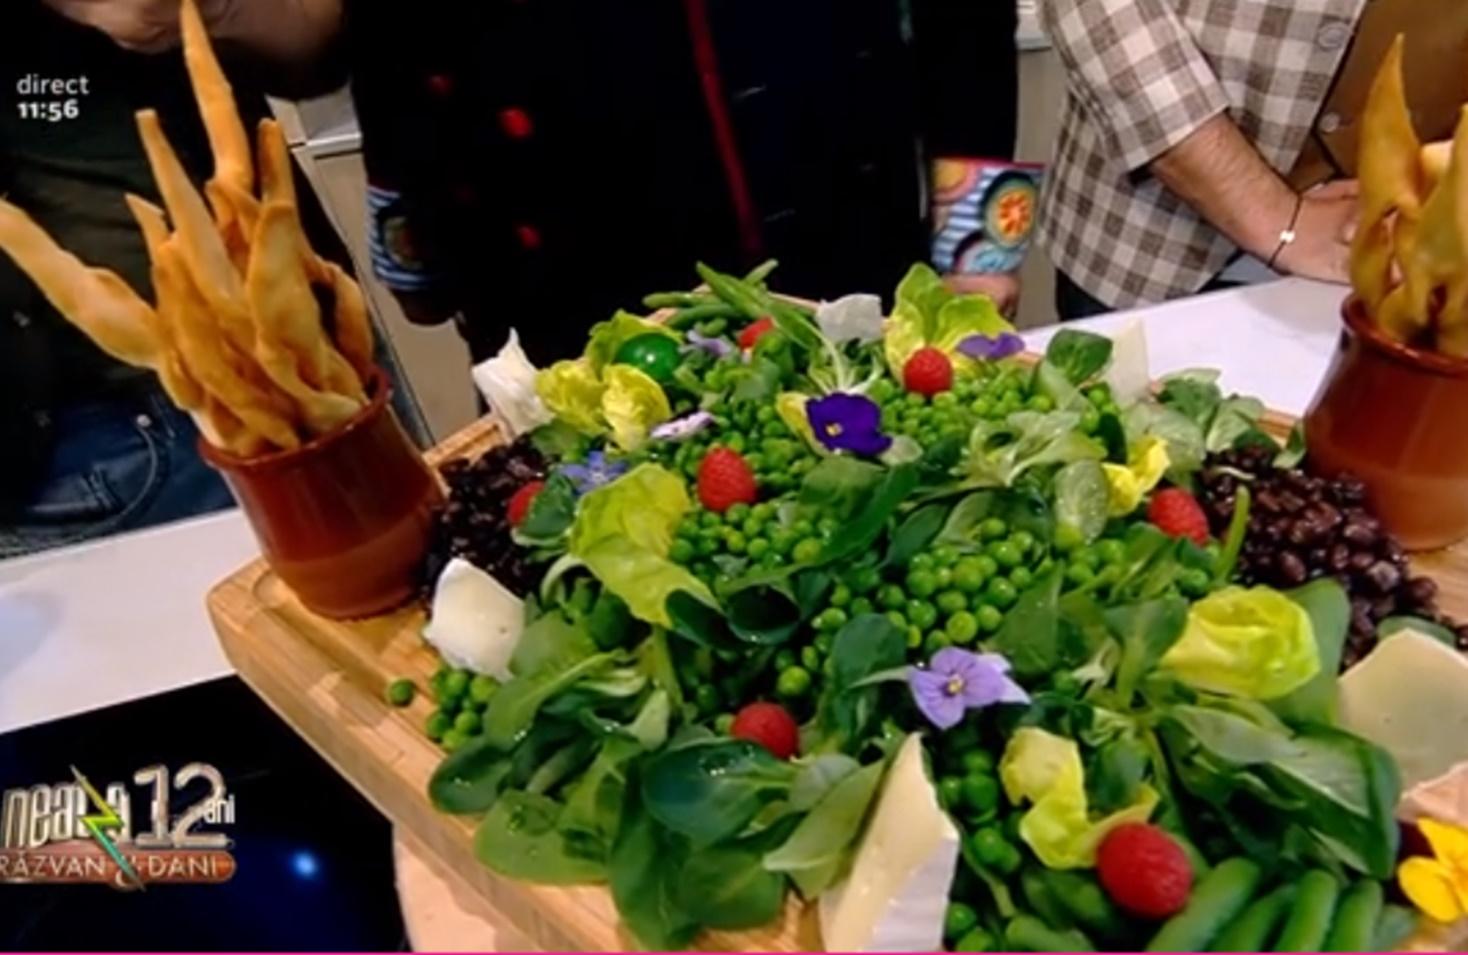 Salată de primăvară servită cu minciunele picante - Rețeta lui Vlăduț de la Neatza cu Răzvan și Dani